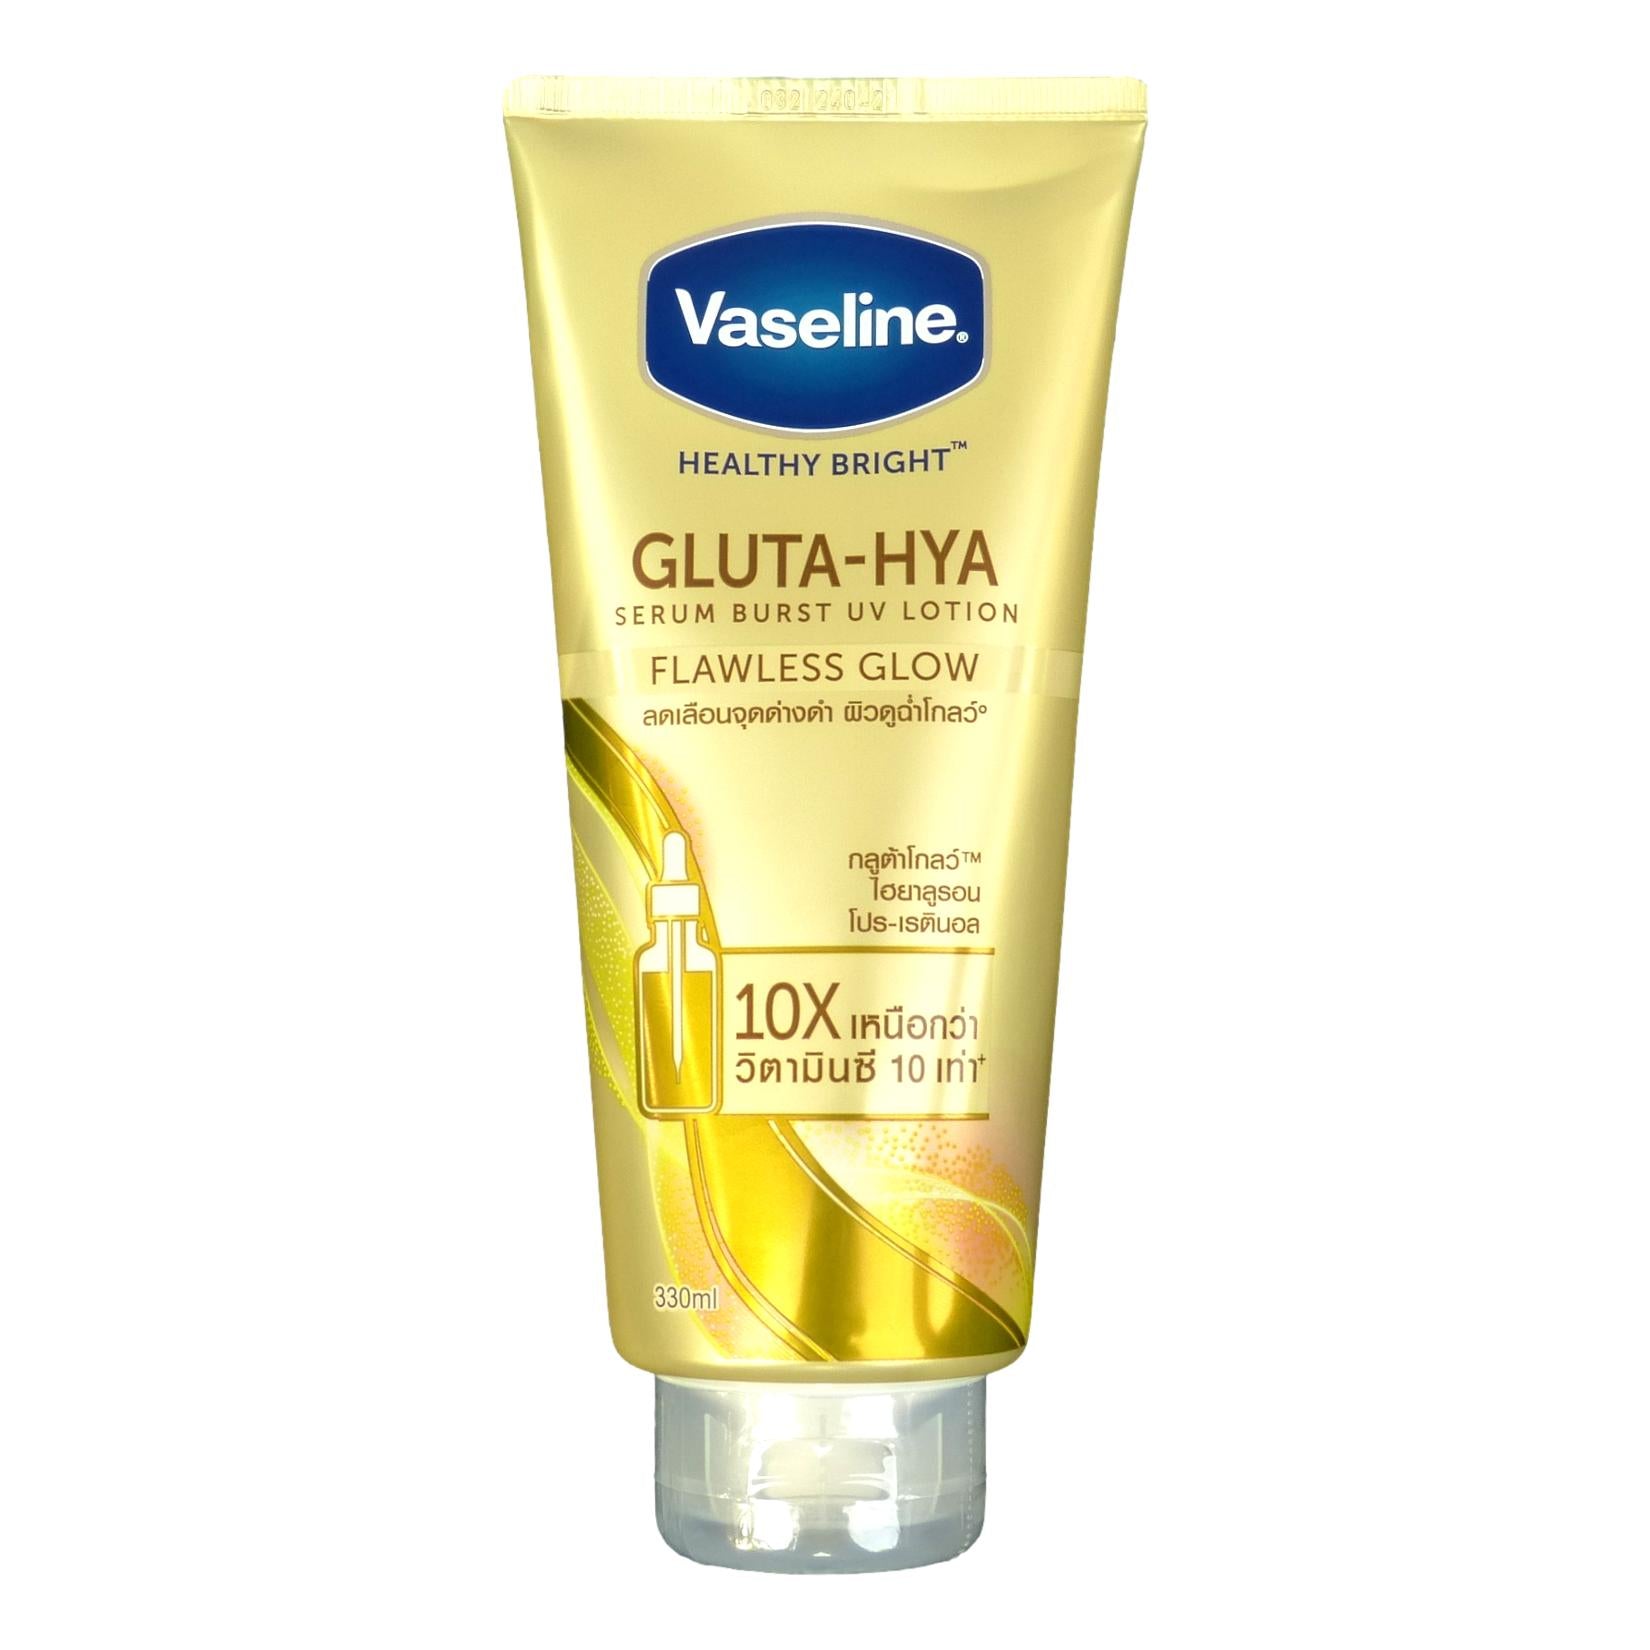 Buy Vaseline Healthy Bright Gluta-Hya Flawless Glow Serum-In-Lotion Online  at Best Price of Rs 240 - bigbasket